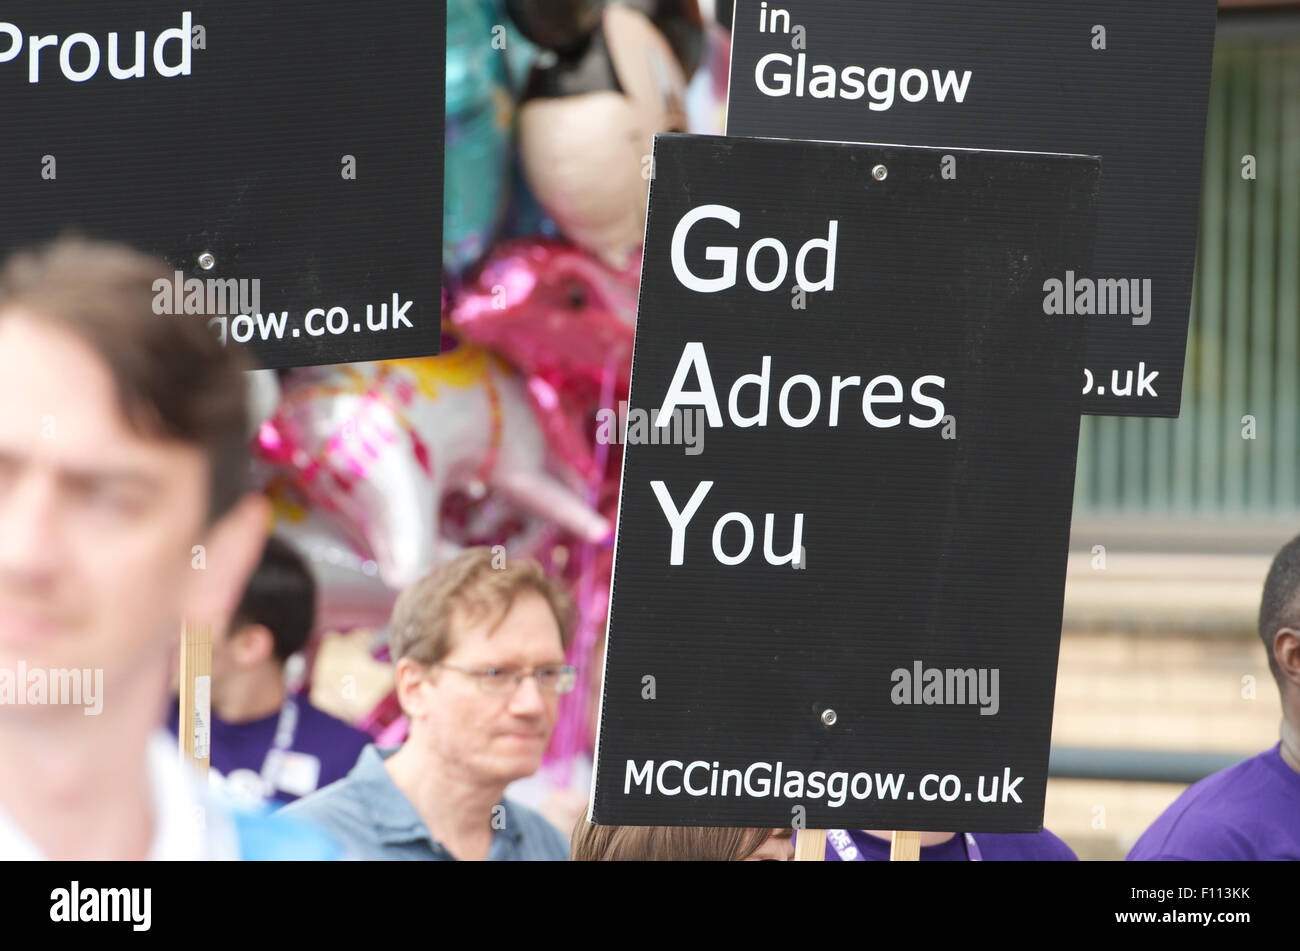 Pride March, Glasgow, 2015. Stock Photo